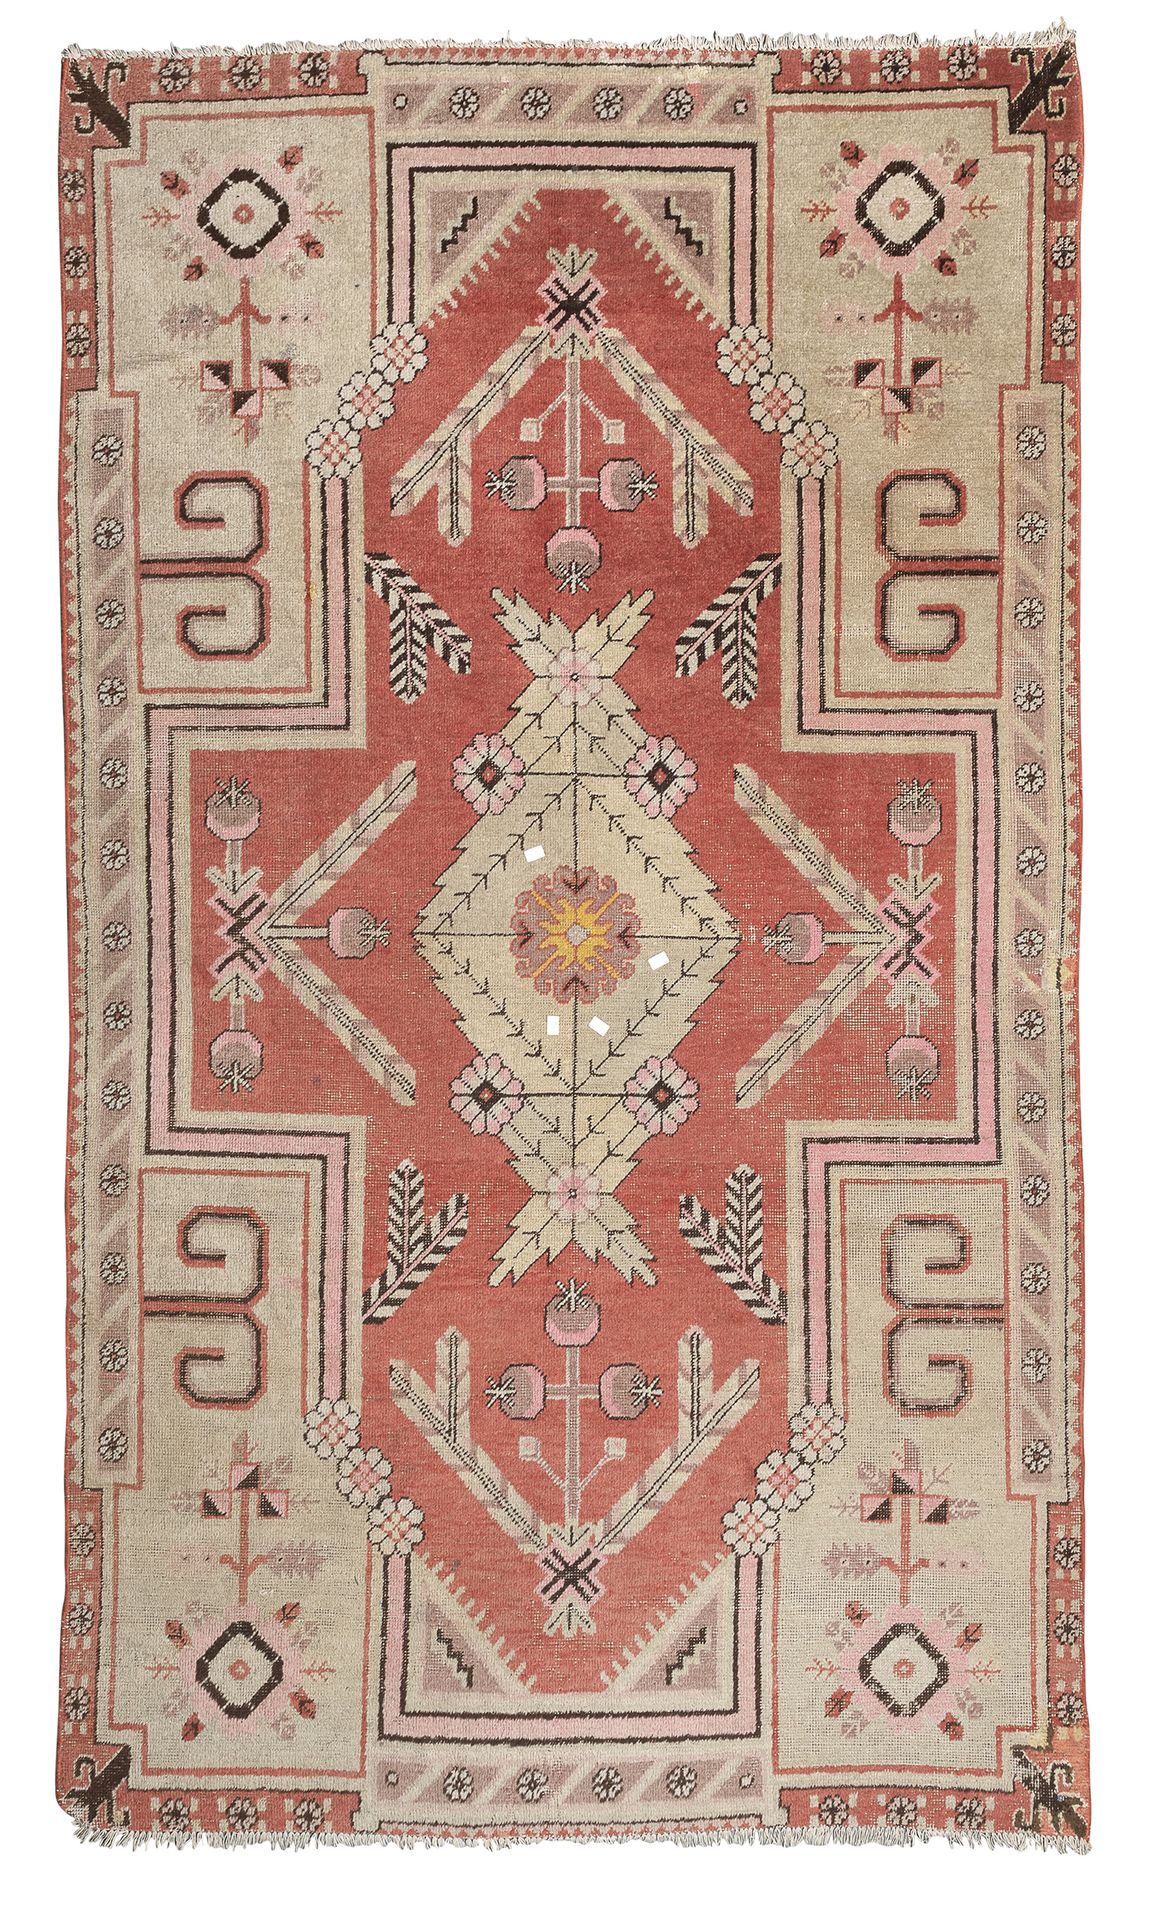 Null 罕见的Samarkanda地毯，19世纪

有一个带叶子和花朵的徽章，以及叶子卷须的次要图案，在中央领域有一个橙色背景。

尺寸为300 x 150厘&hellip;